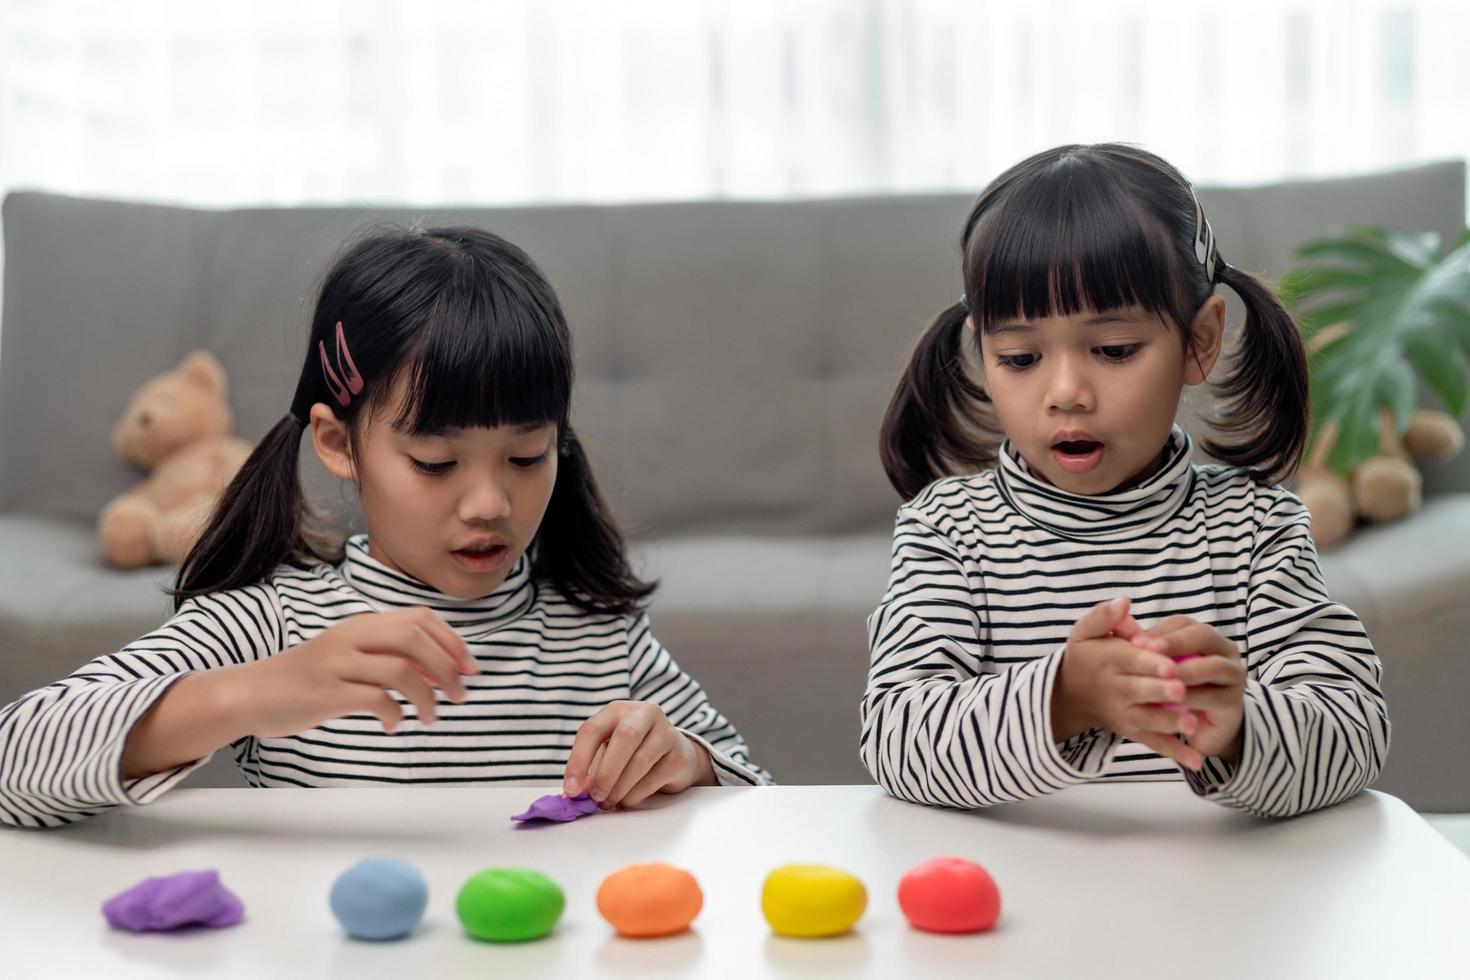 les enfants asiatiques jouent avec des formes de moulage d'argile, apprenant par le jeu photo